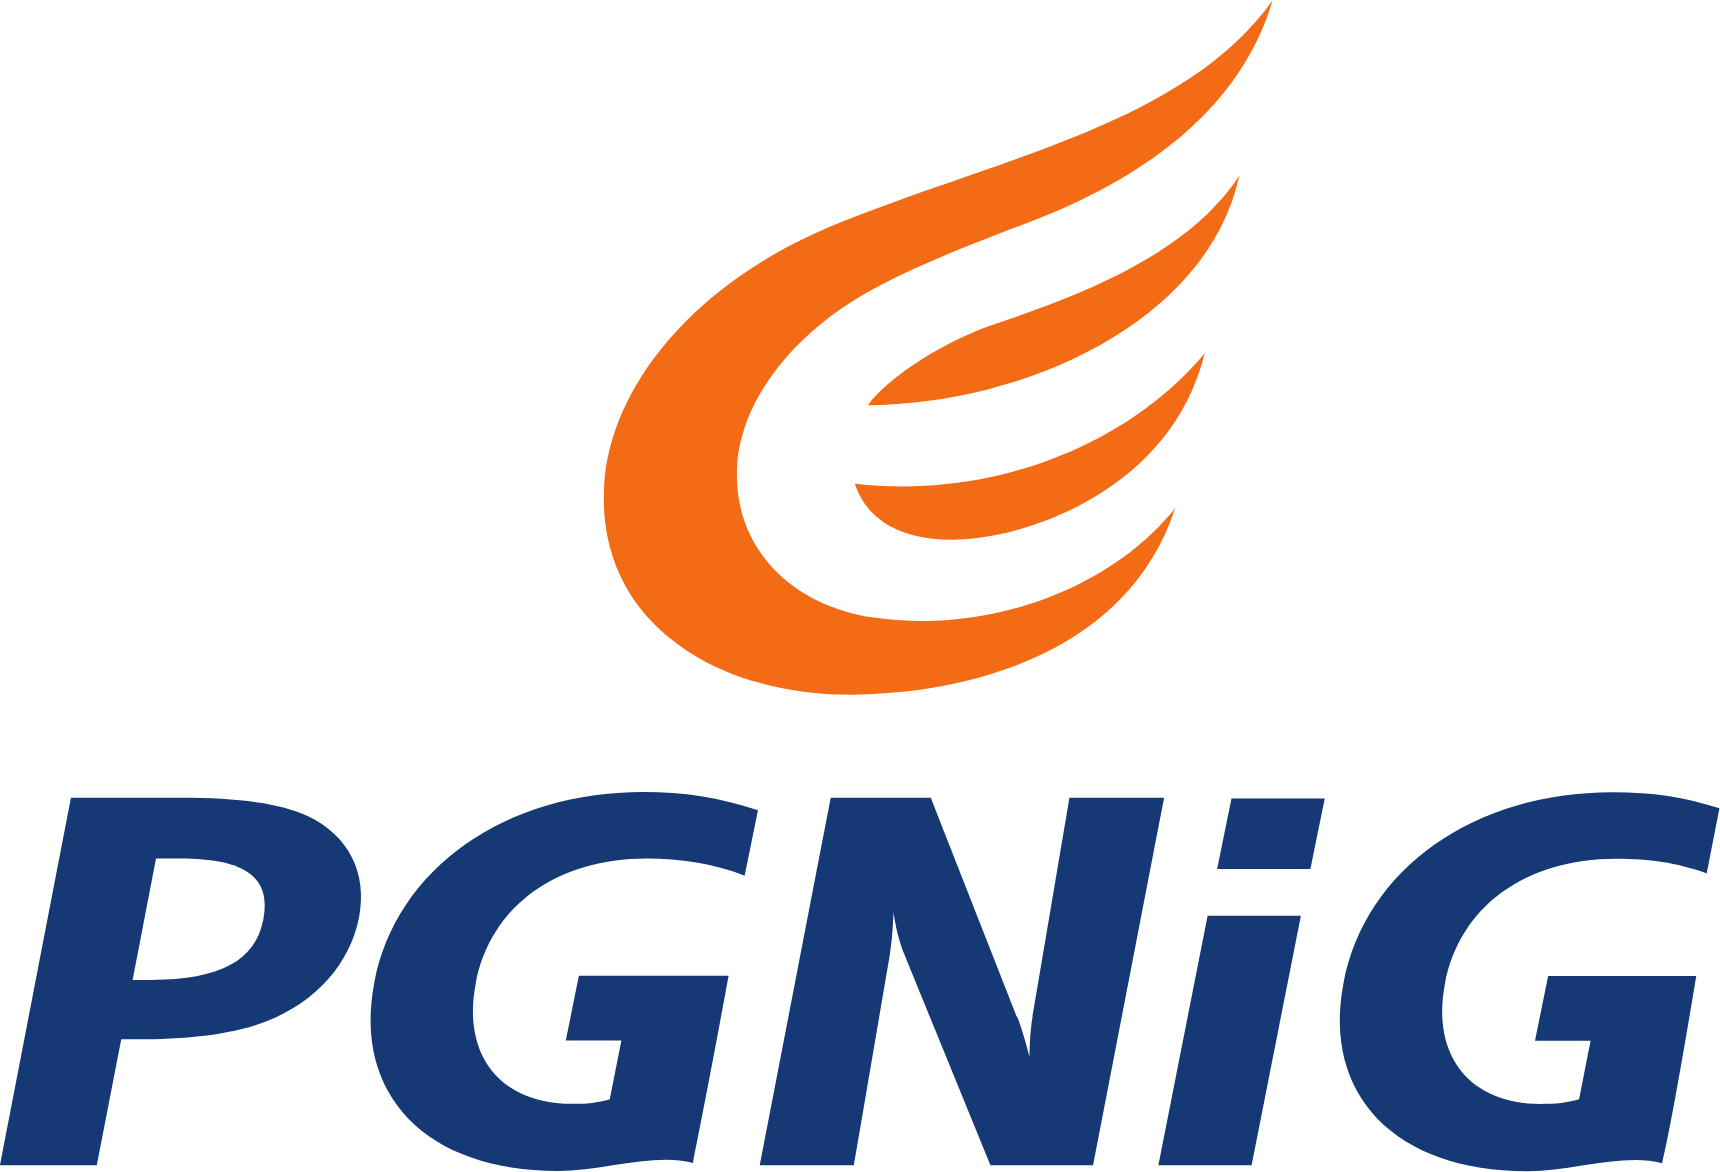 PGNiG logo large (transparent PNG)